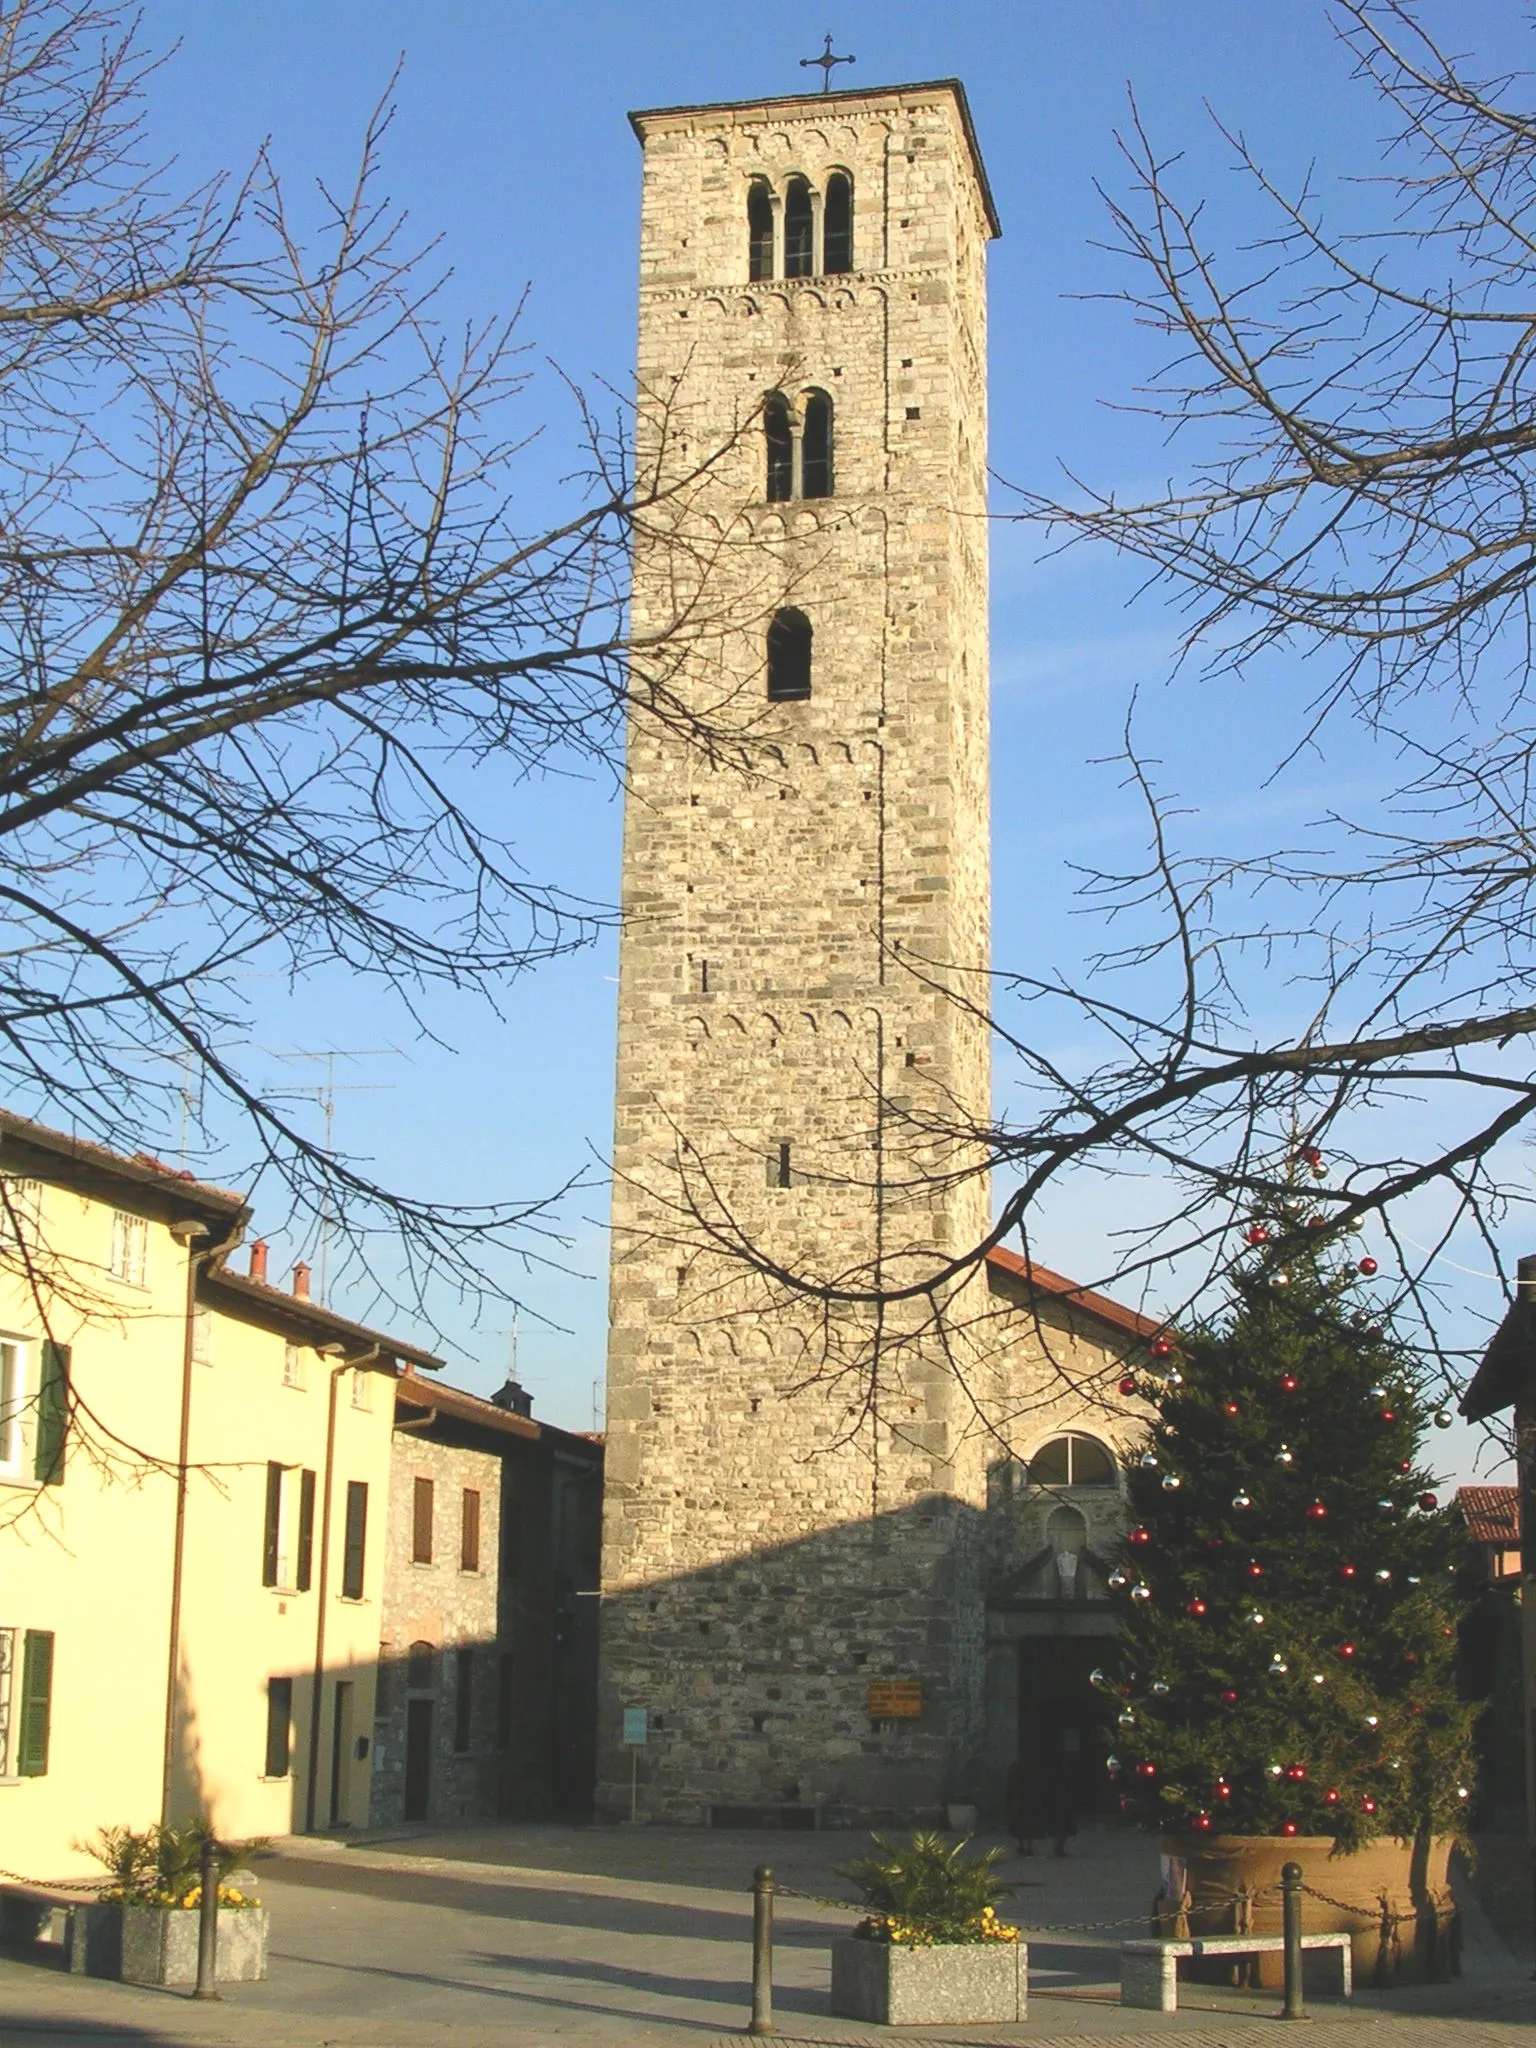 Photo showing: Chiesa romanica di Sant'Eufemia a Erba (CO) con il campanile risalente alla fine dell'XI secolo.
Fotografia libera dai diritti di copyright, ceduta a Wikipedia dall'autore, Stefano Ripamonti.